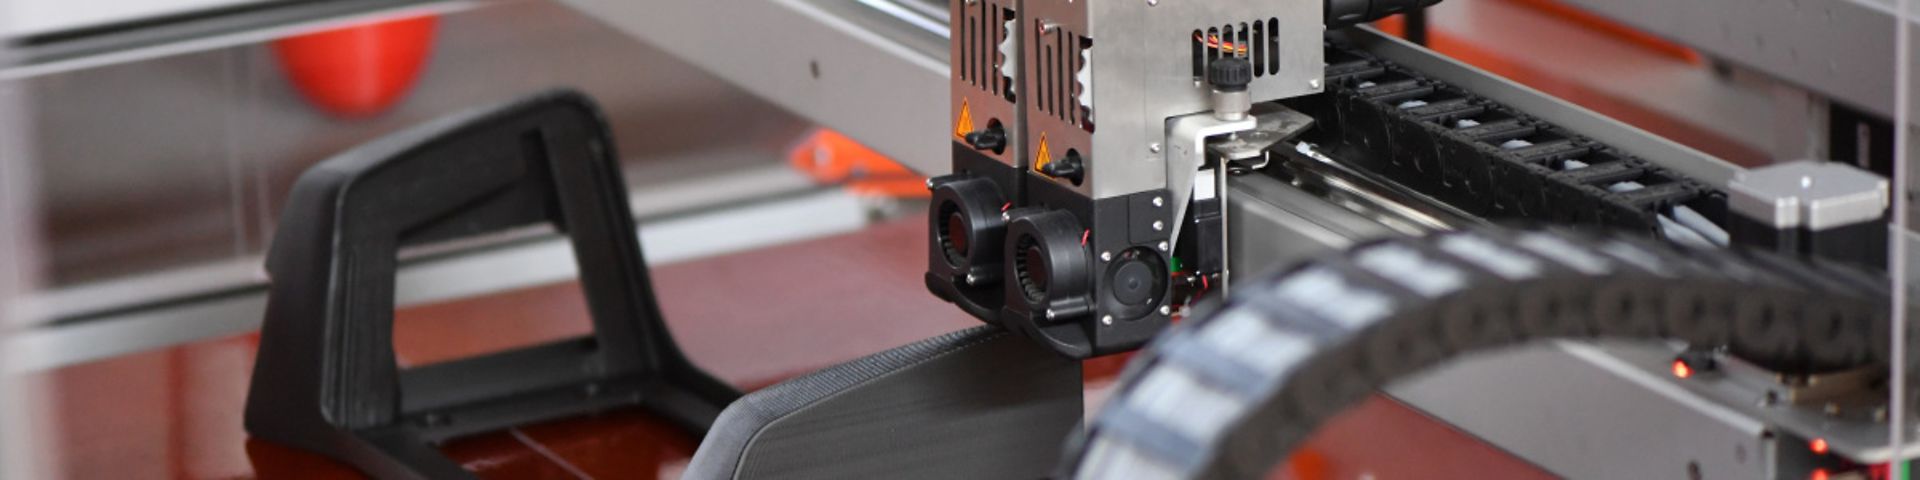 Ersatzteile für die DB aus dem 3D-Drucker: Kopfstütze für einen Regionalzug